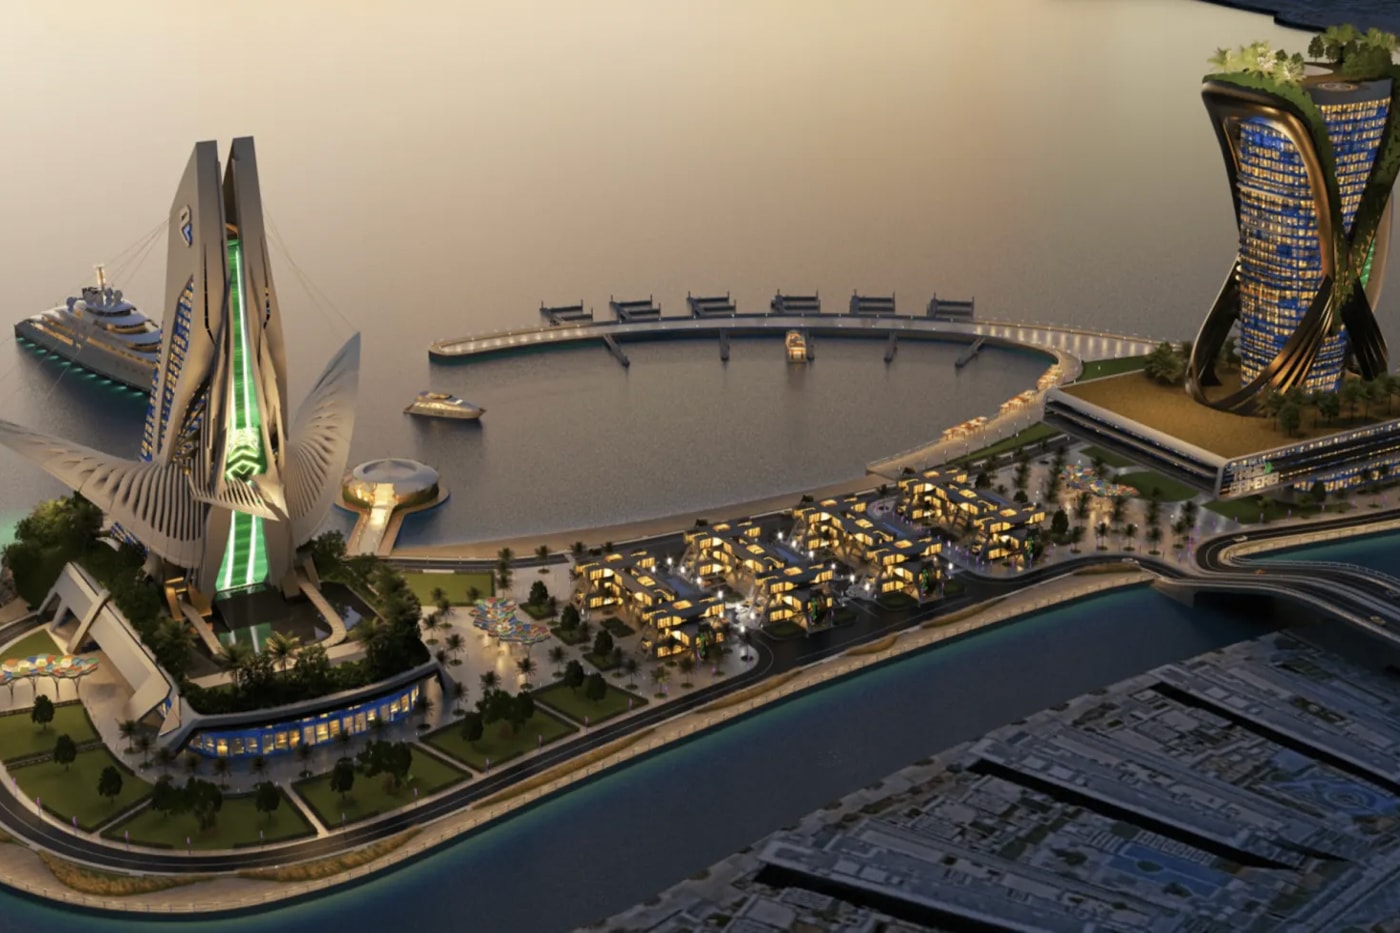 阿布達比即將耗資 $2.8 億美元興建全球首座「電競島」